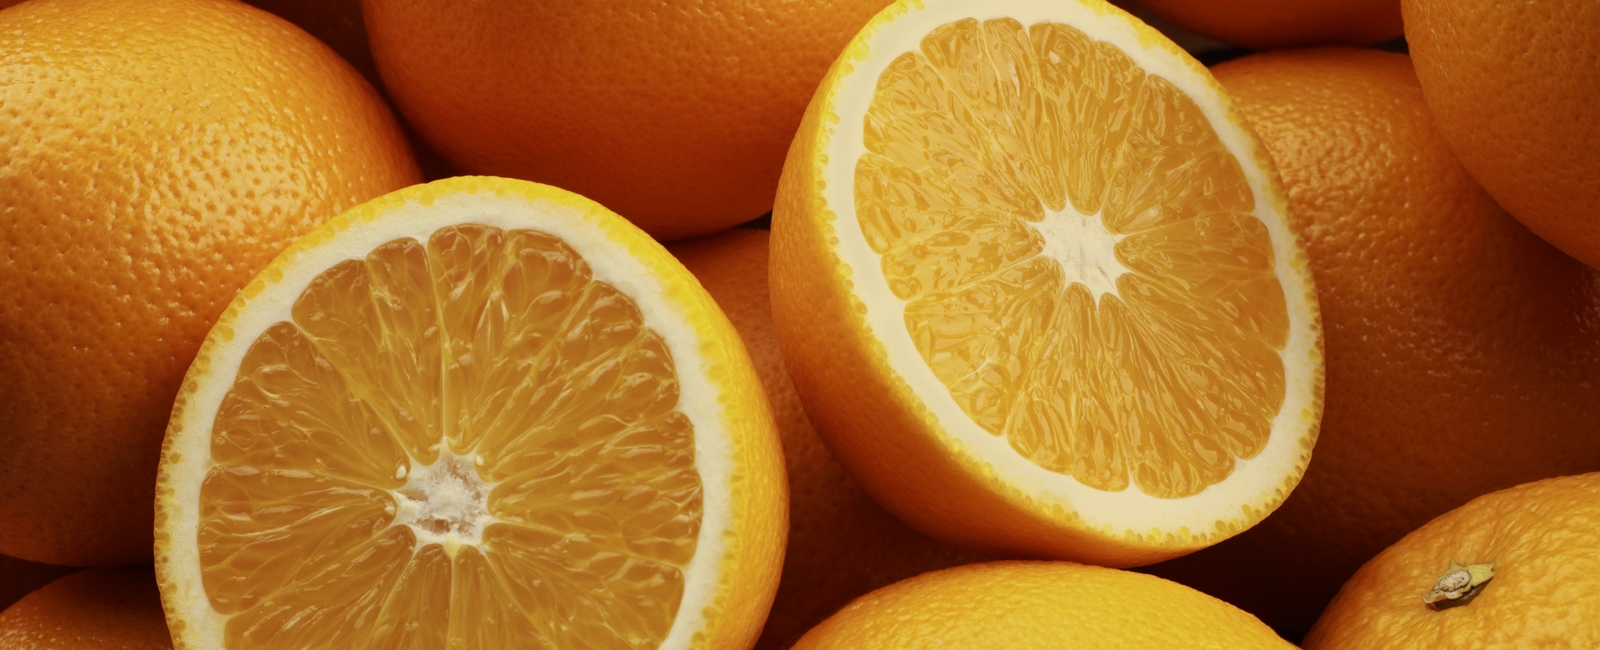 Role of Calcium in Citrus Production